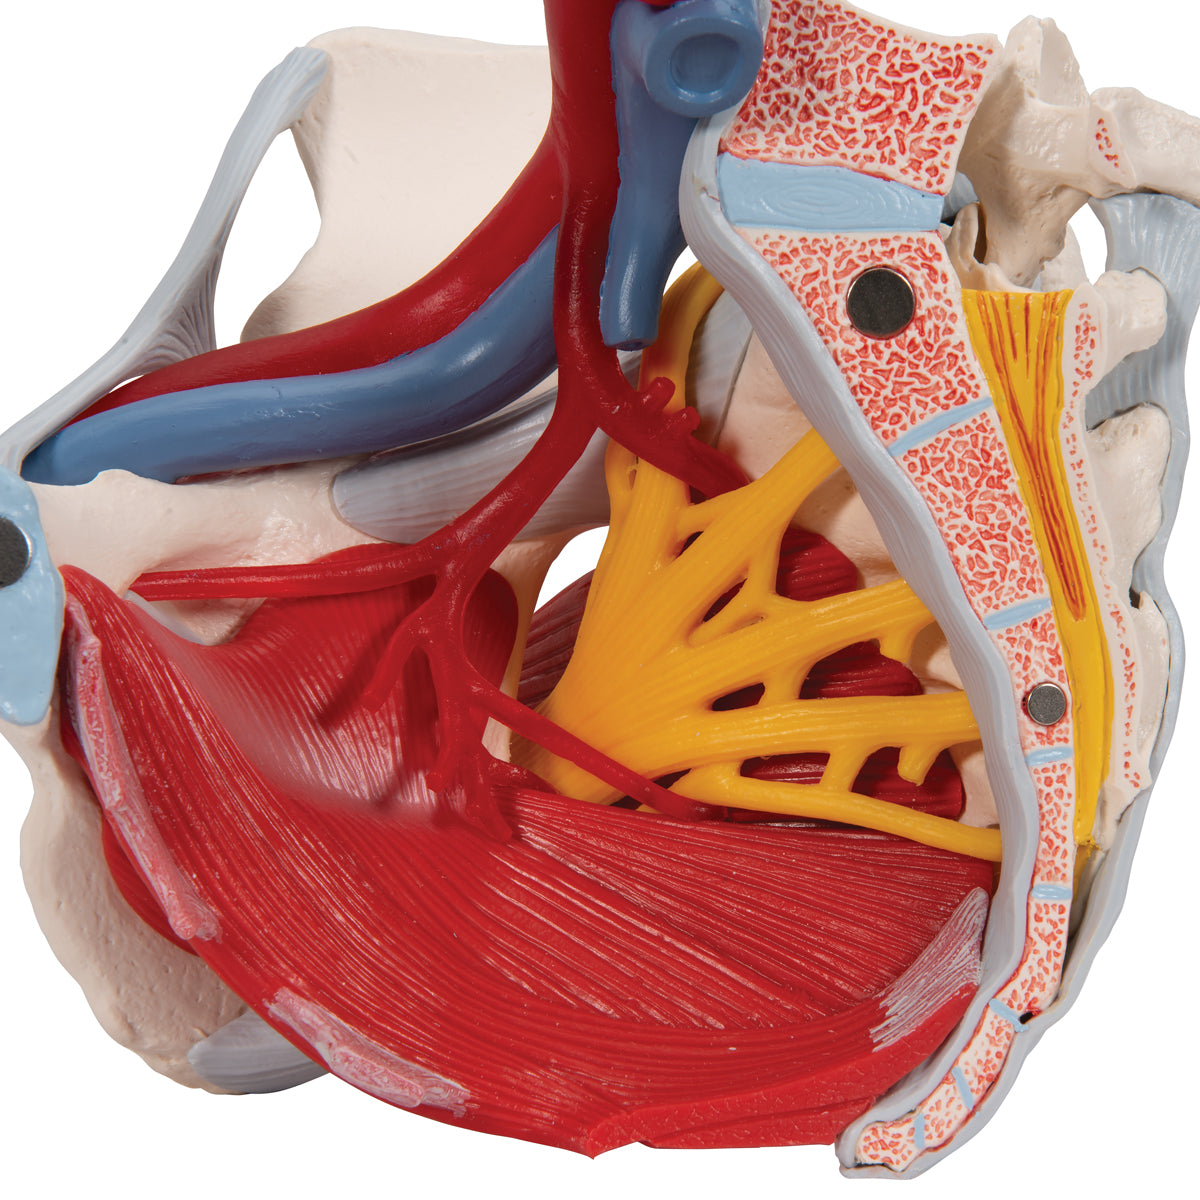 Bækkenmodel der viser bækken-bunden, kønsorganer, ledbånd, nerver og blodkar hos kvinden